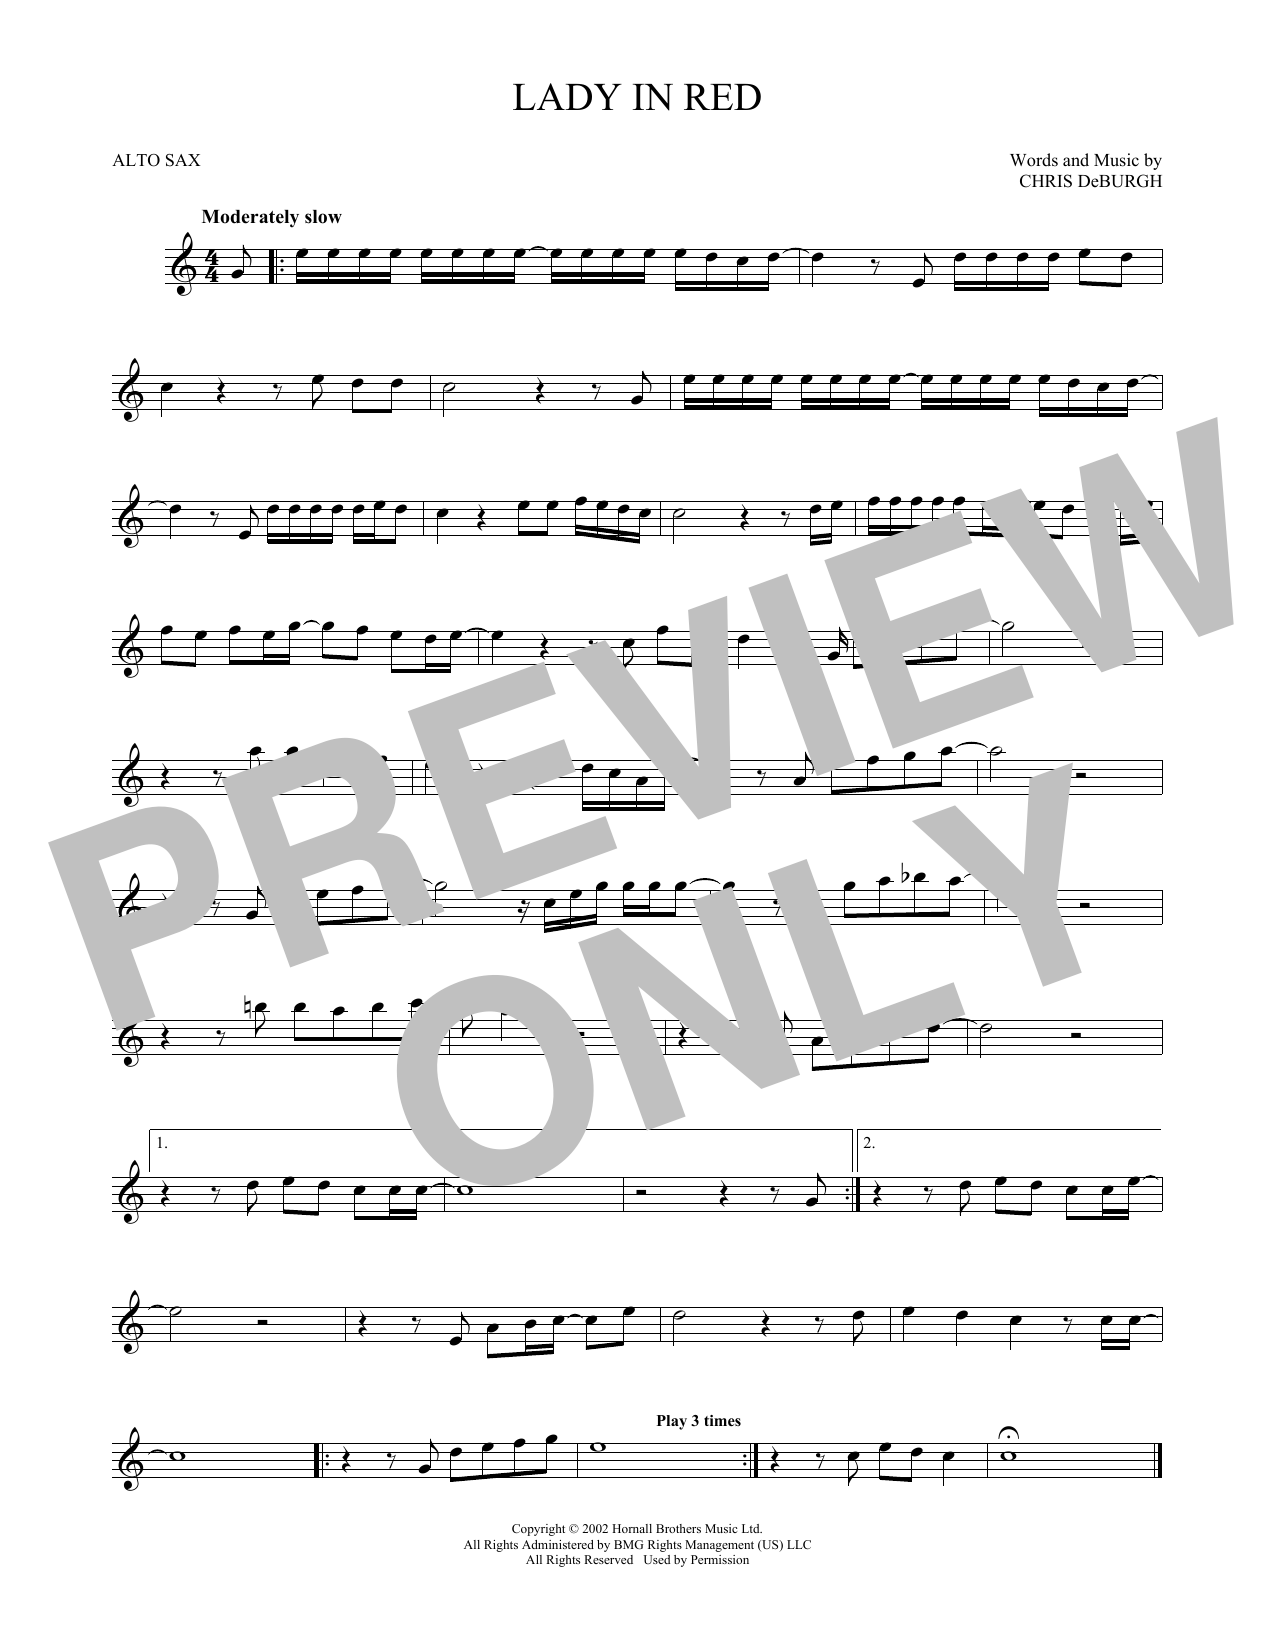 Chris Deburgh Lady In Red Sheet Music Download Printable Pdf Score Sku